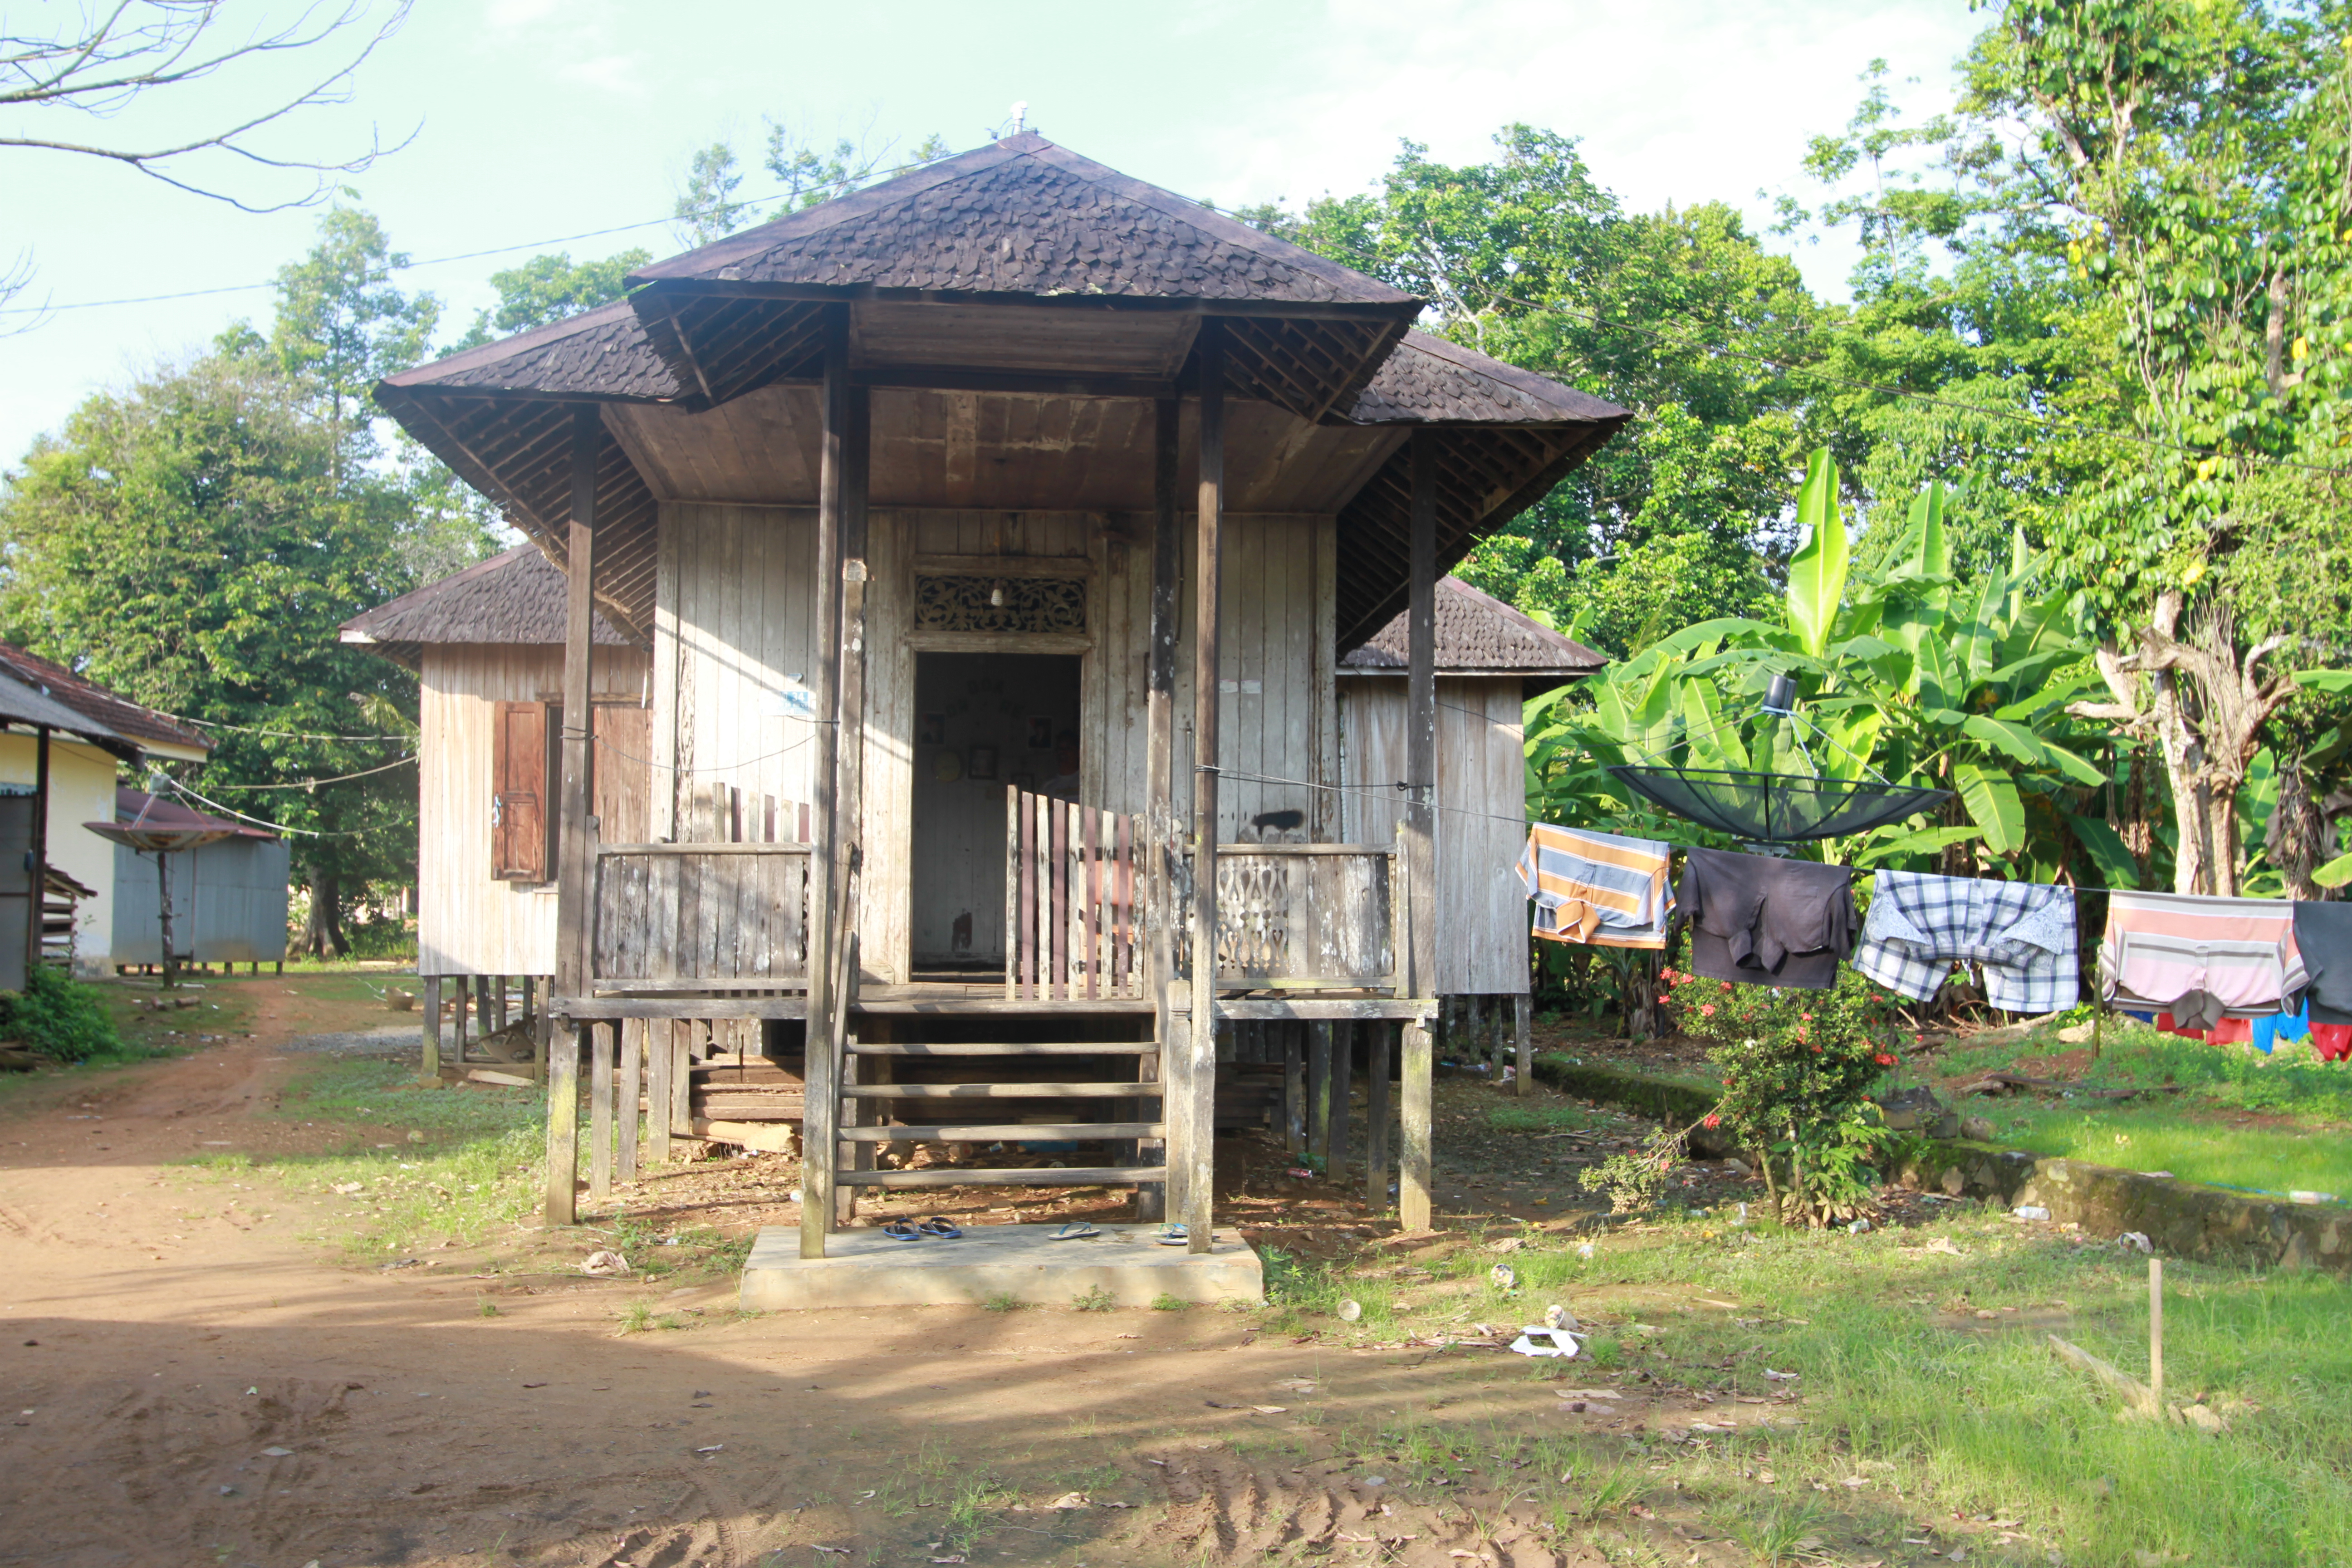 Rumah Tradisional Banjarmasin Balai Pelestarian Cagar Budaya